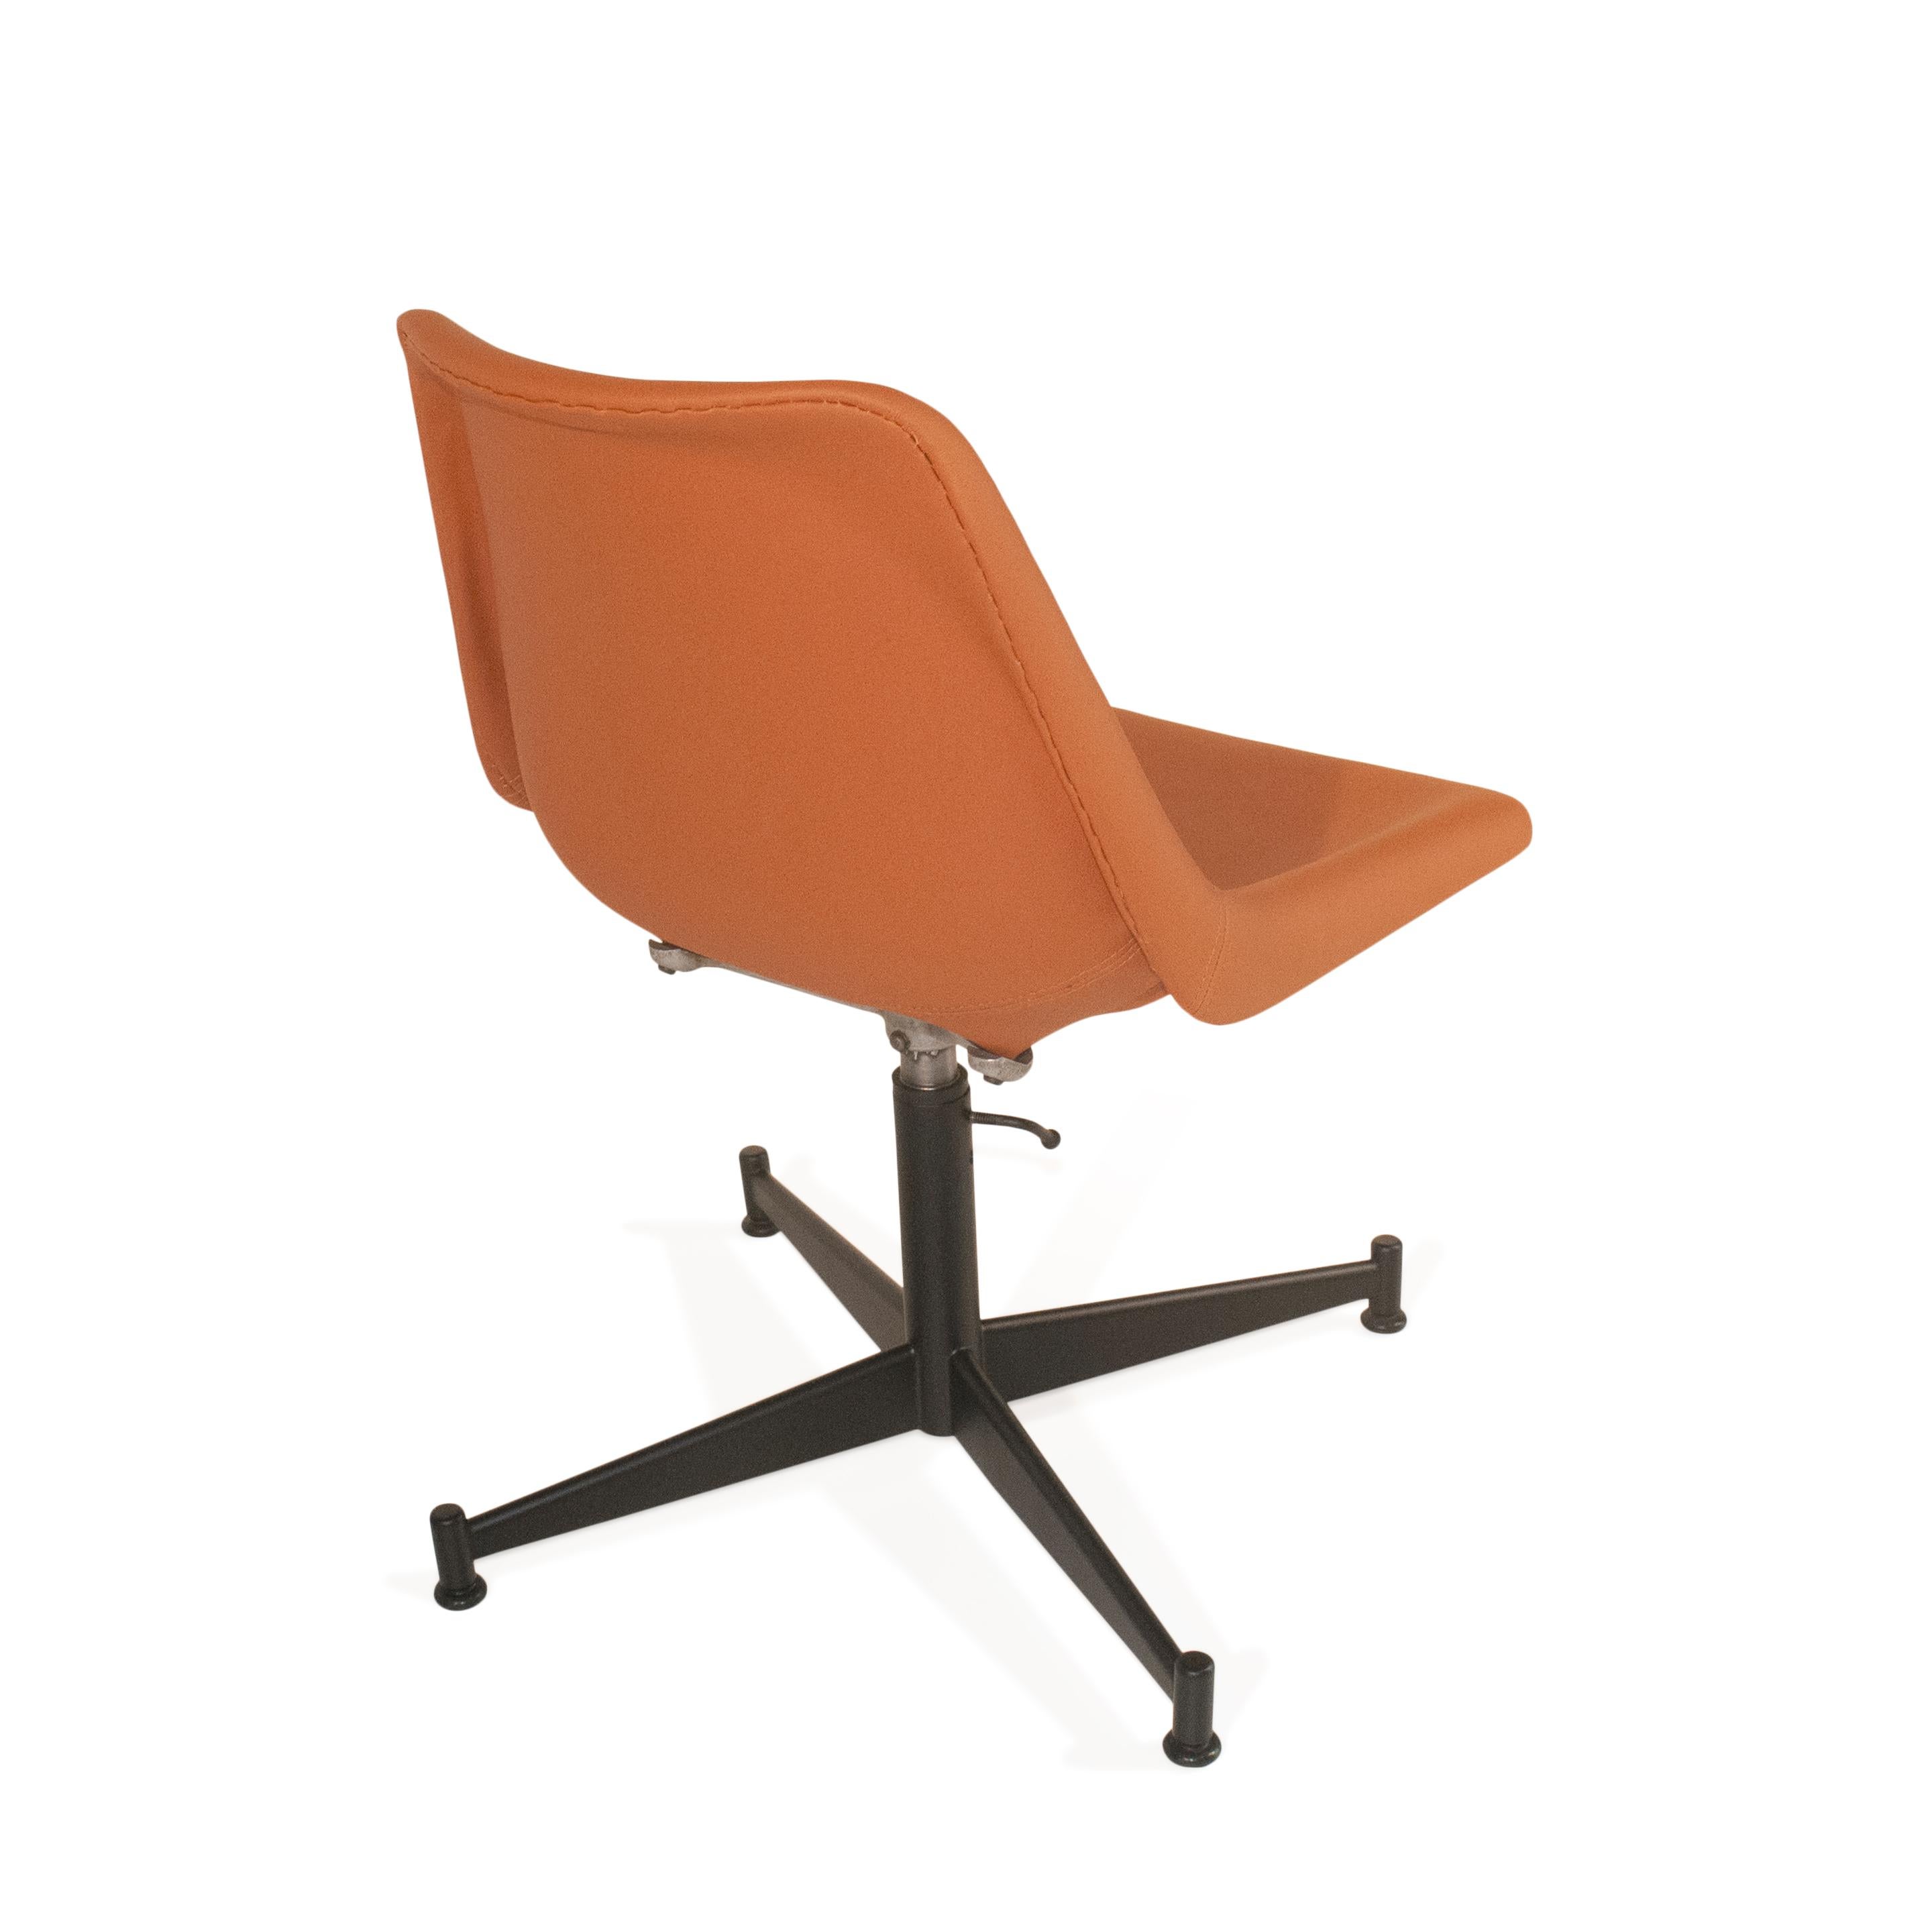 Der Listenpreis gilt pro Stuhl, insgesamt sind 6 Stühle verfügbar!
L'Atelier, ein renommiertes Unternehmen für Möbeldesign, ist ein Zeugnis für das Genie seines Gründers Jorge Zalszupin. Der in Polen geborene Architekt, der Brasilien zu seiner